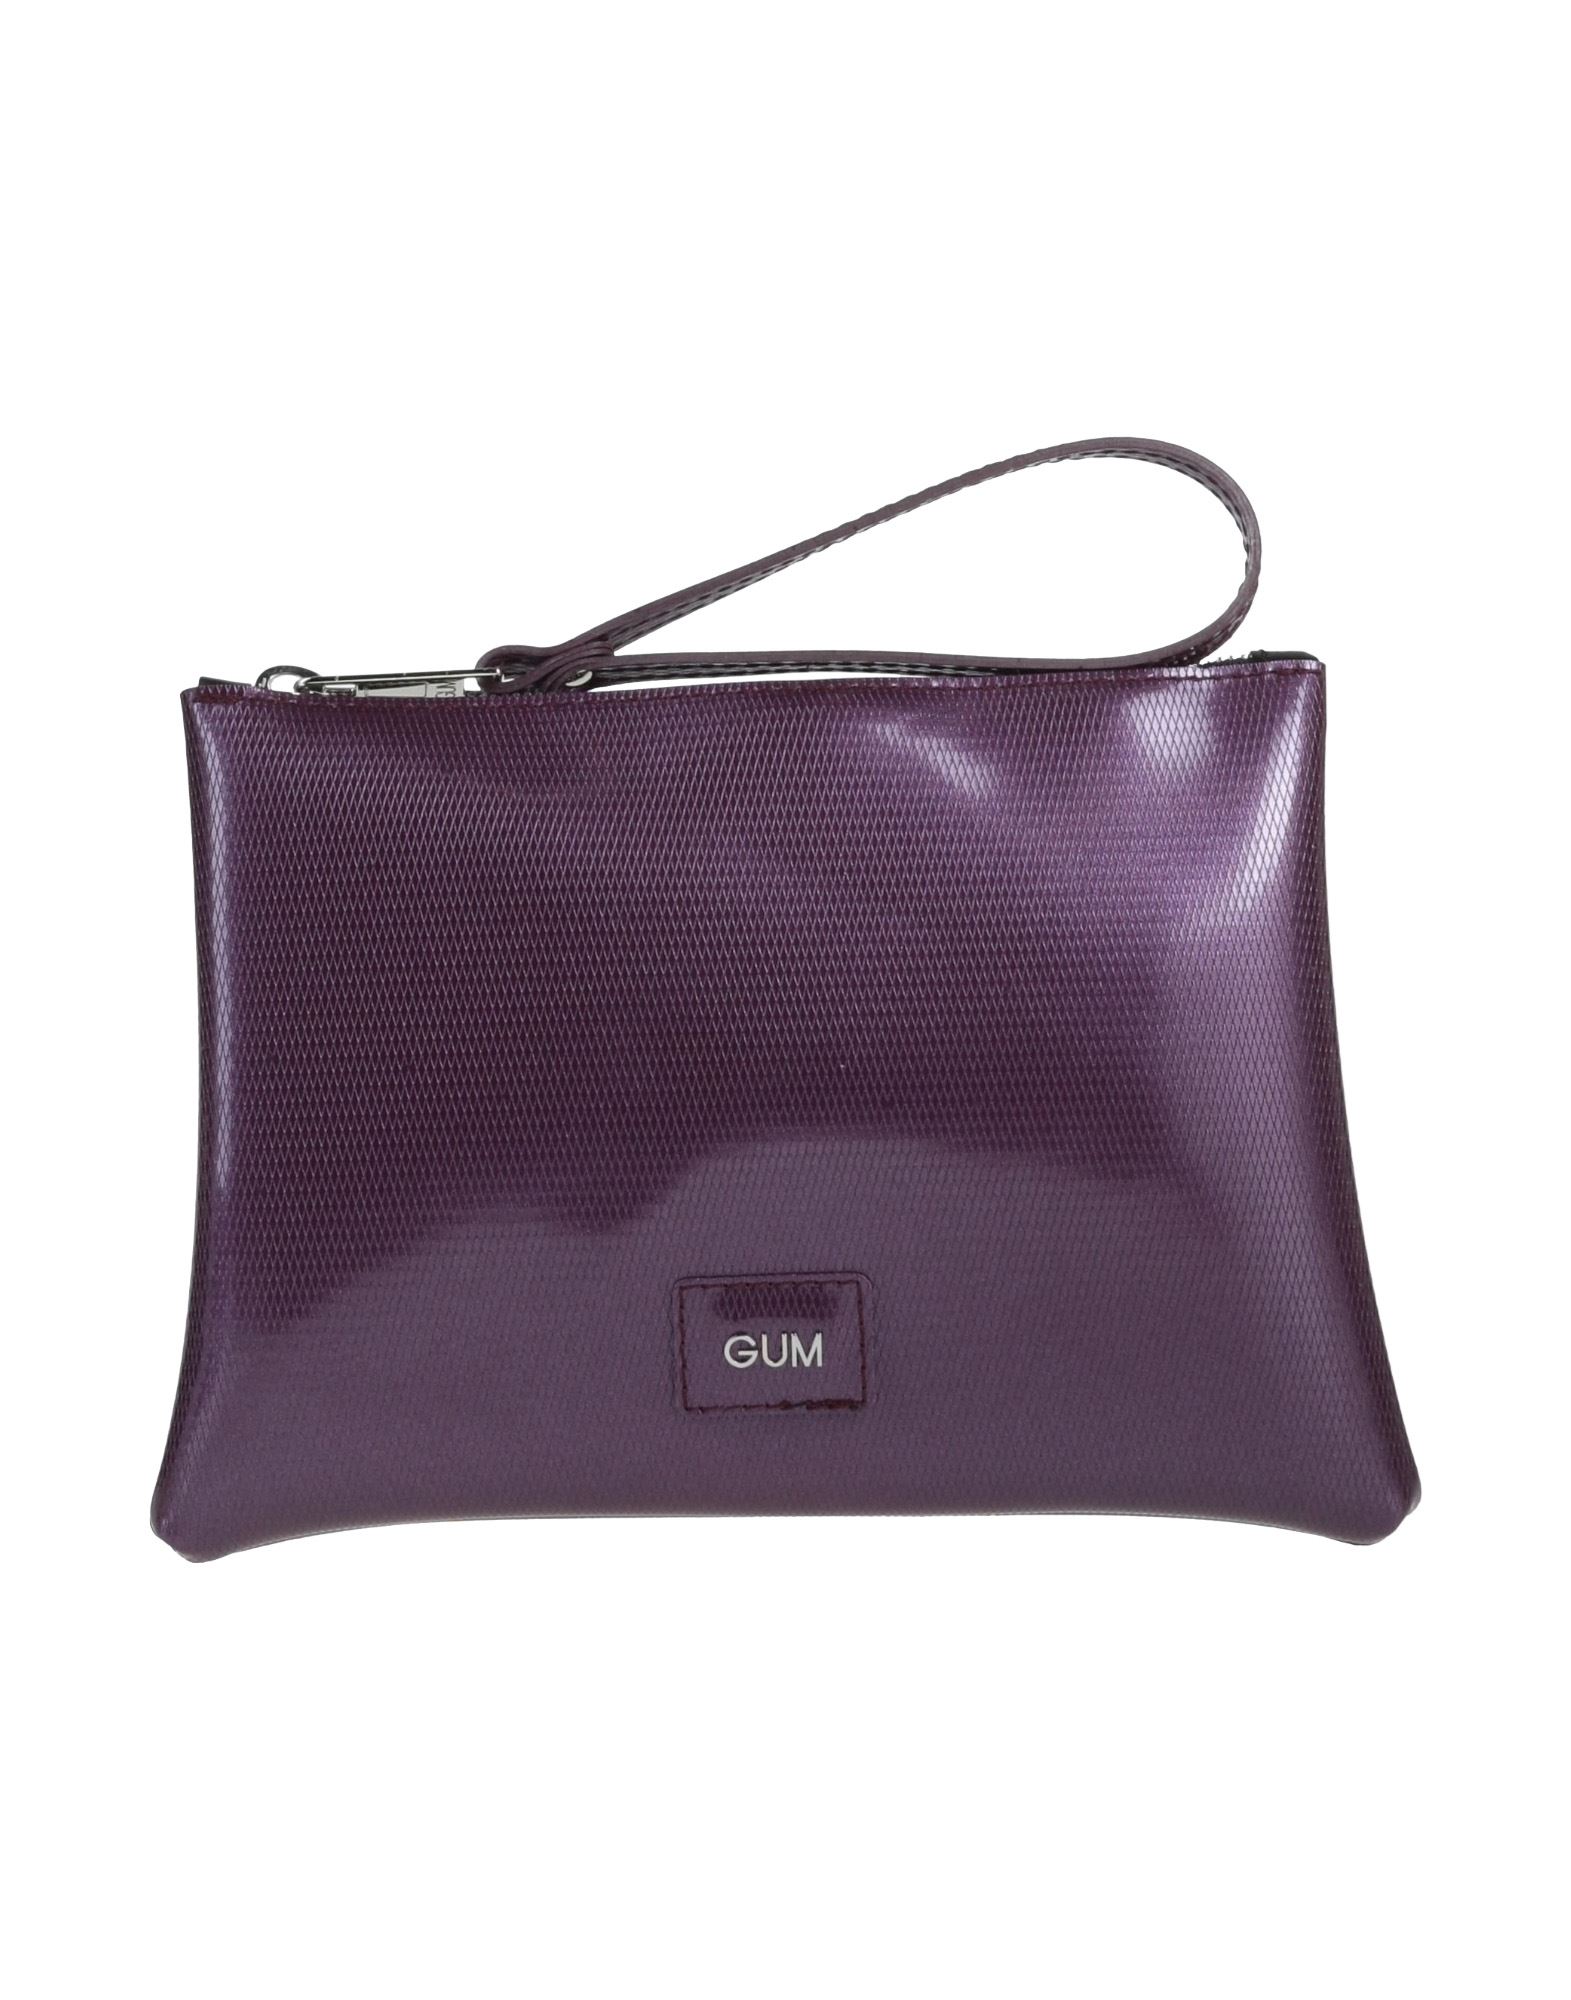 Gum Design Handbags In Purple